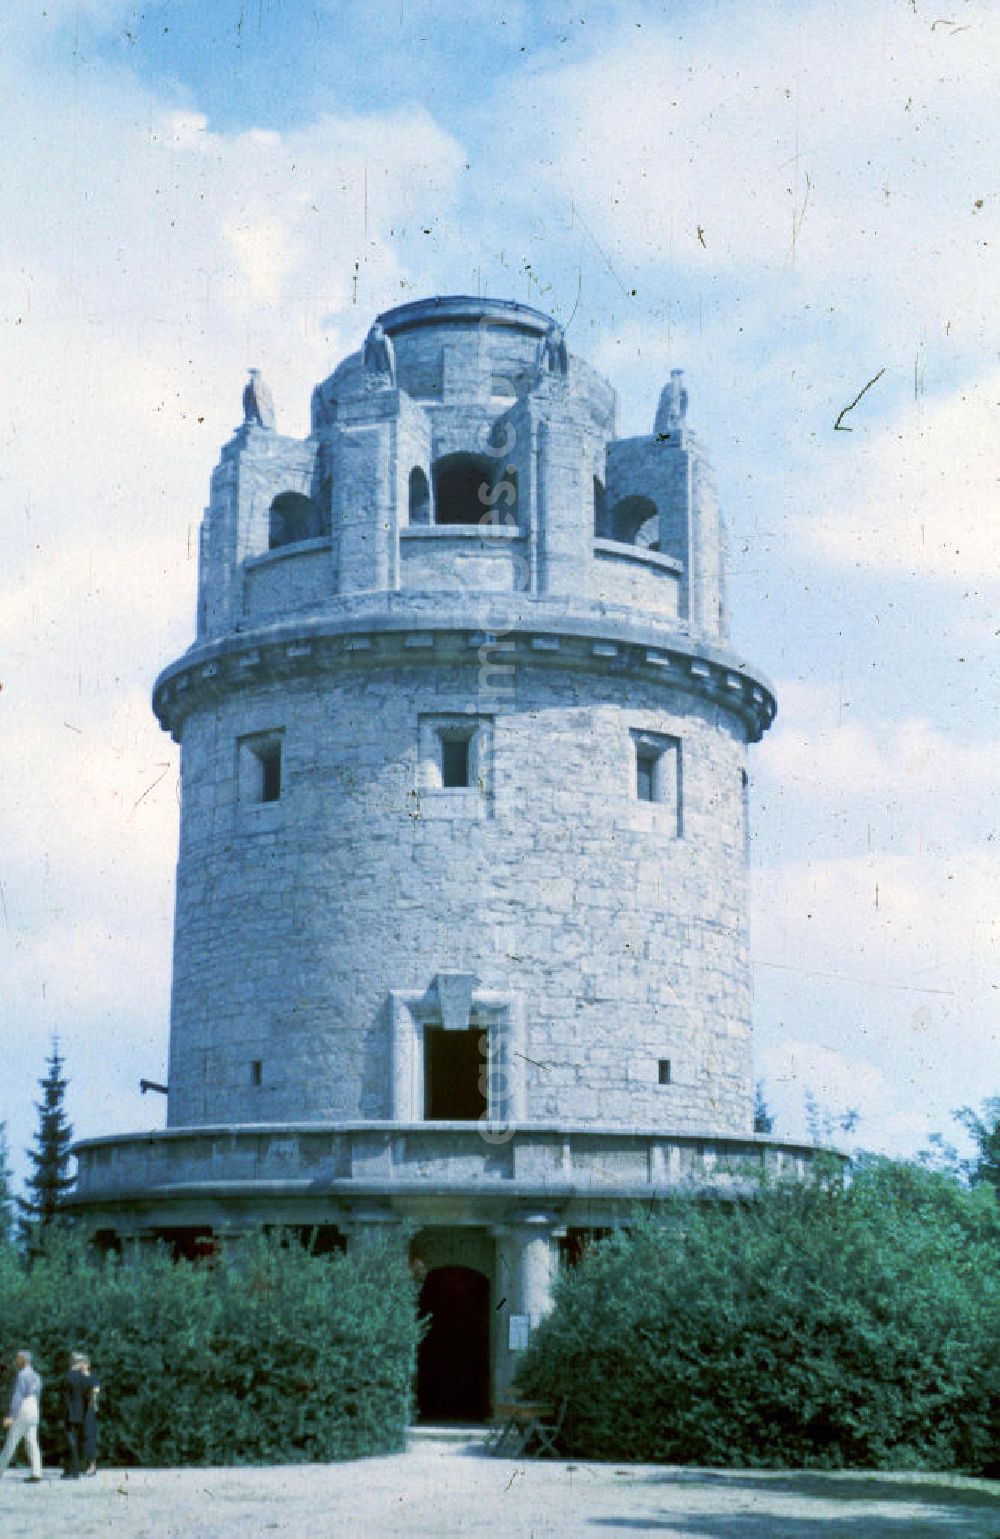 GDR image archive: Jena - Bismarckturm Jena auf dem Malakoff-Berg. Bismarck tower Jena at the Malakoff hill.